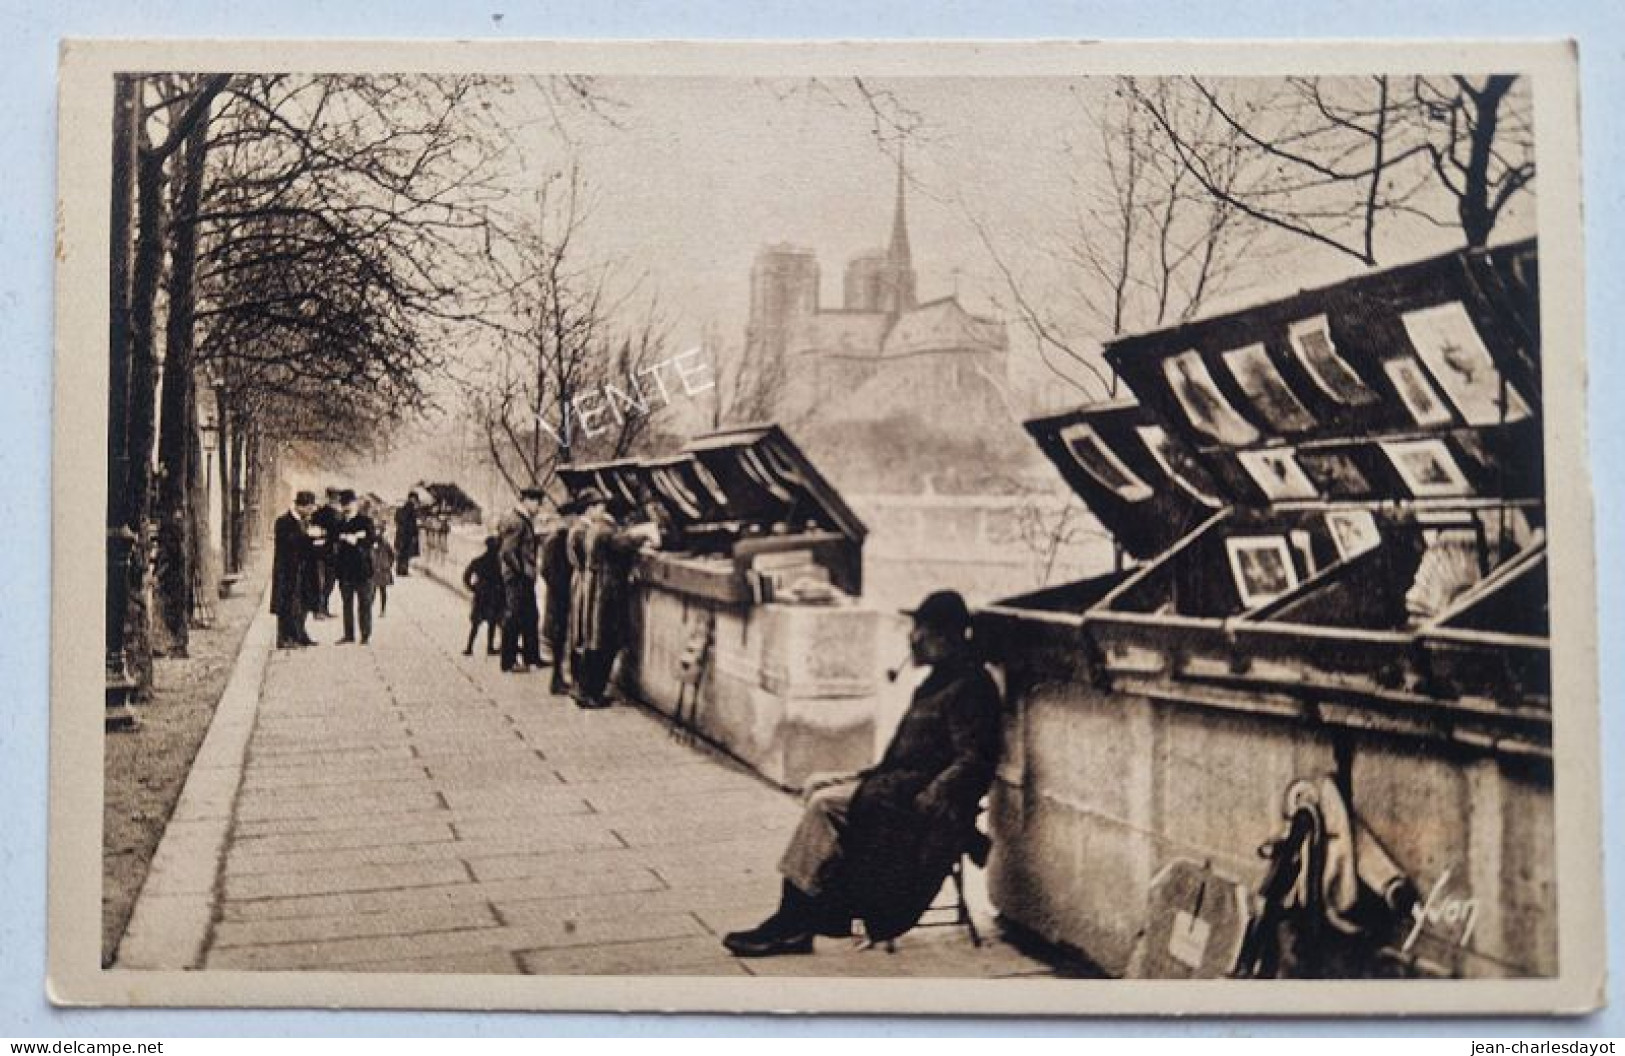 Carte Postale PARIS : Les Bouquinistes Quai Tournelle - El Sena Y Sus Bordes